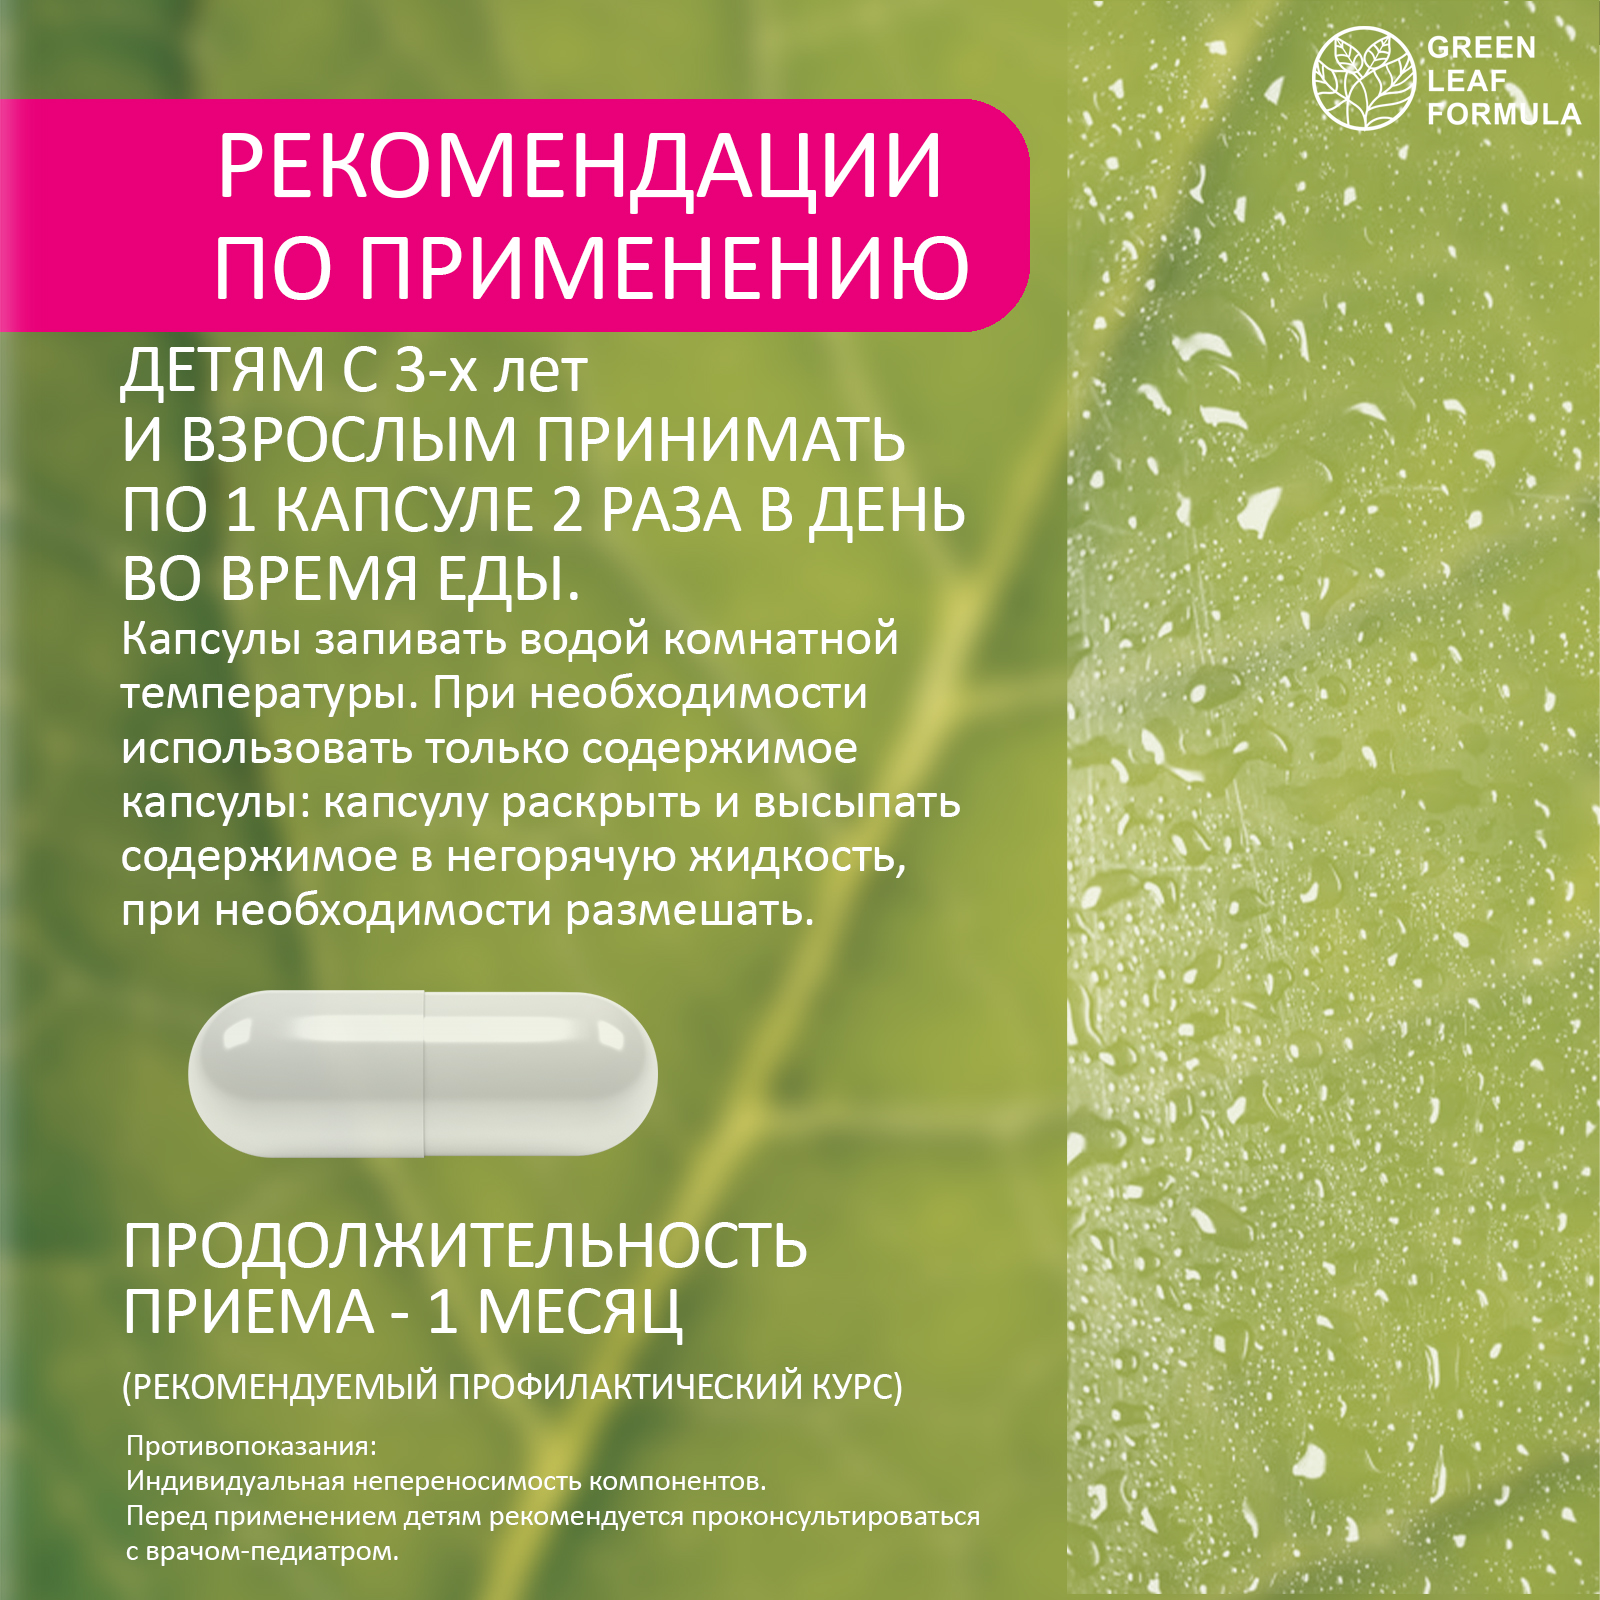 Детский пробиотик Green Leaf Formula витаминный комплекс для детей от 3 лет 60 капсул - фото 9